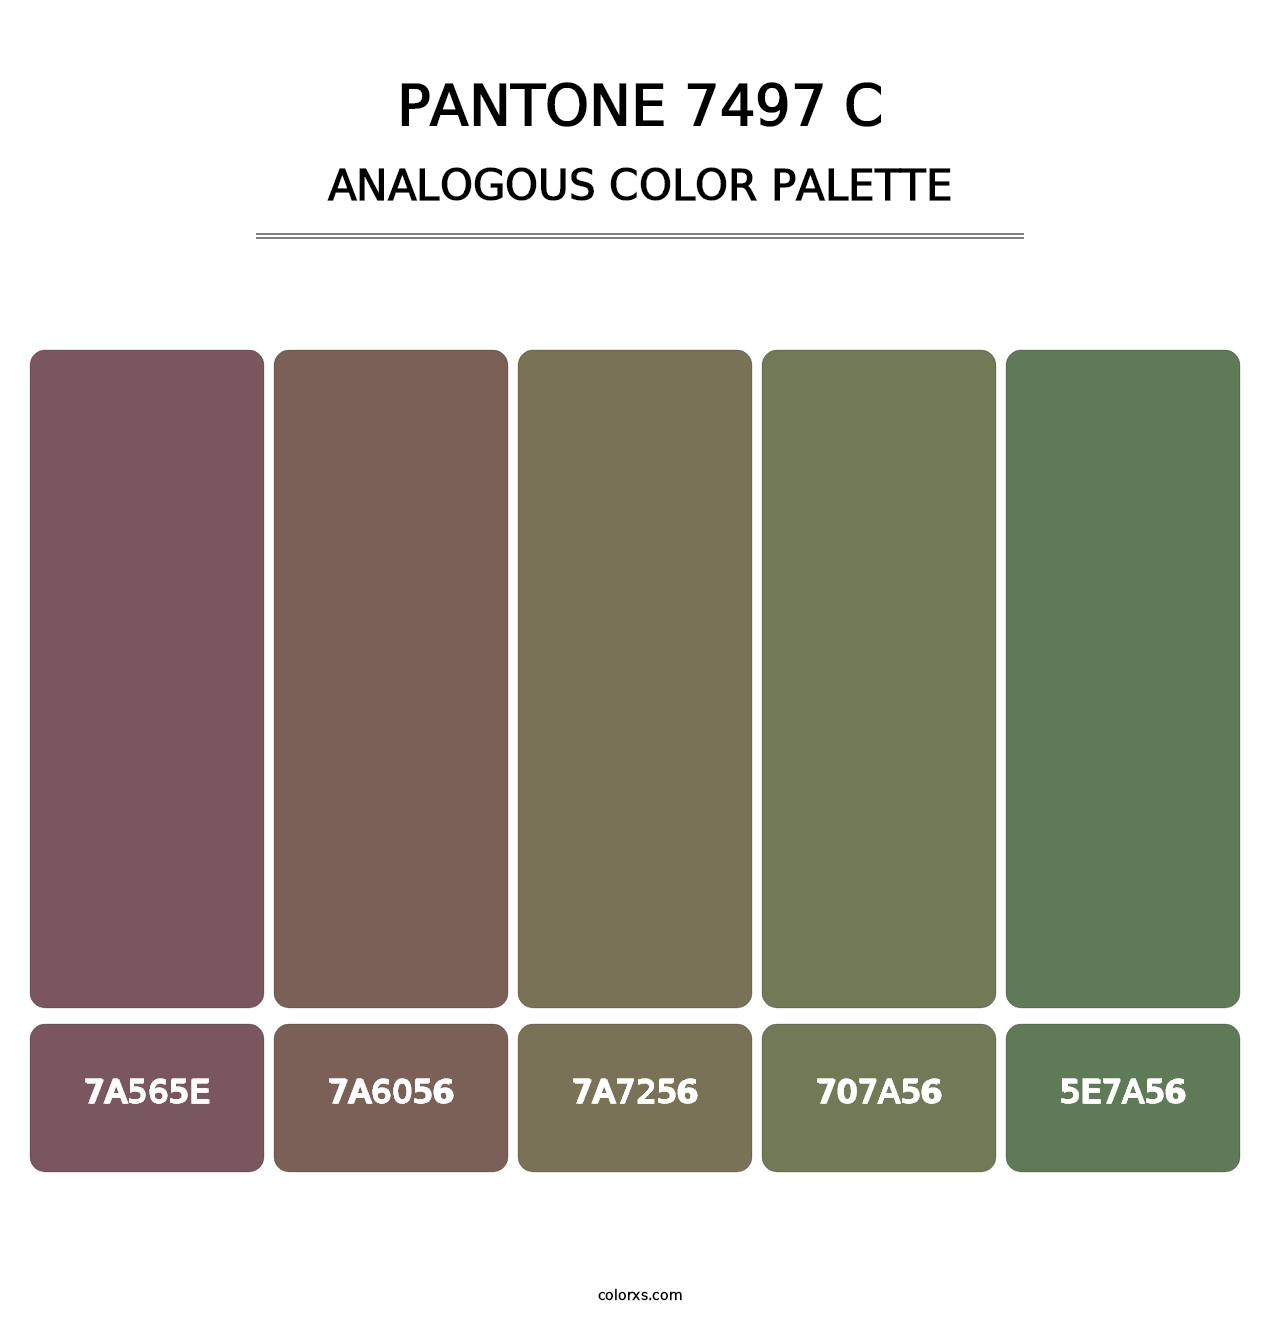 PANTONE 7497 C - Analogous Color Palette